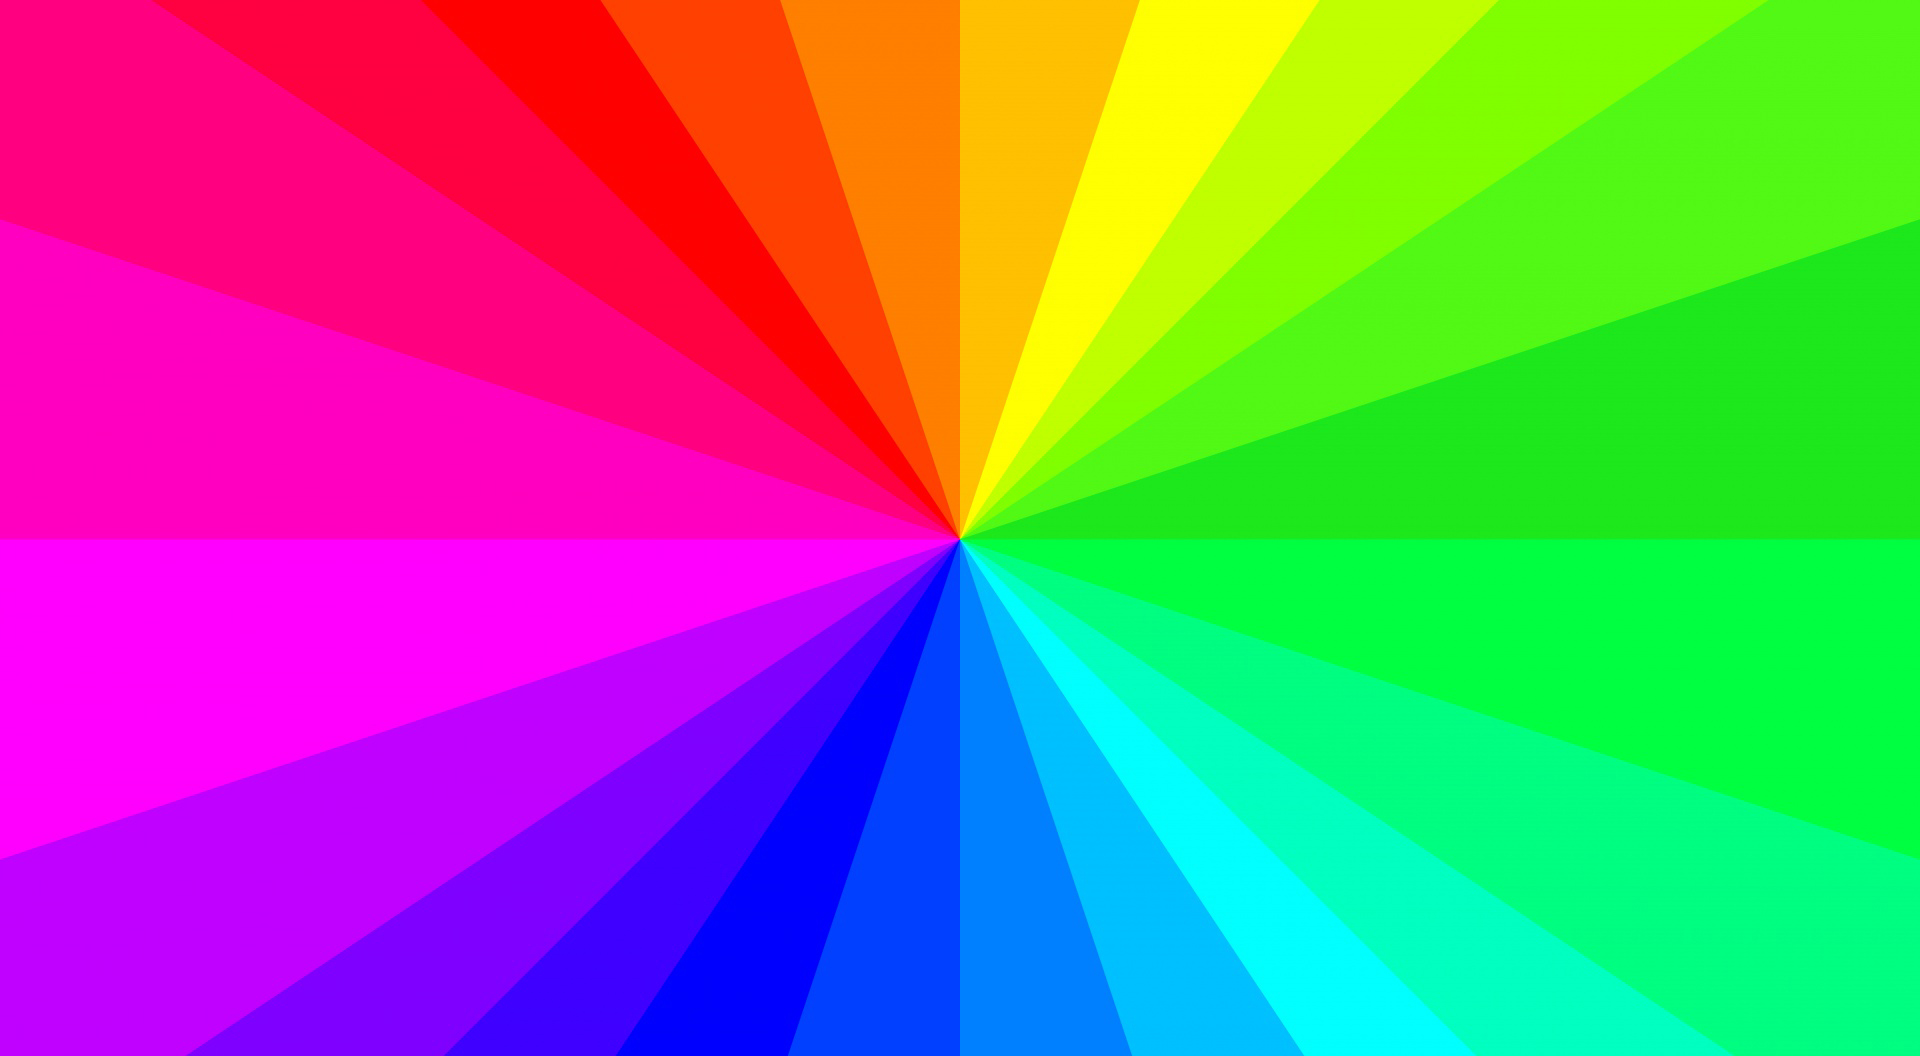 Free download Rainbow Backgrounds | PixelsTalk.Net